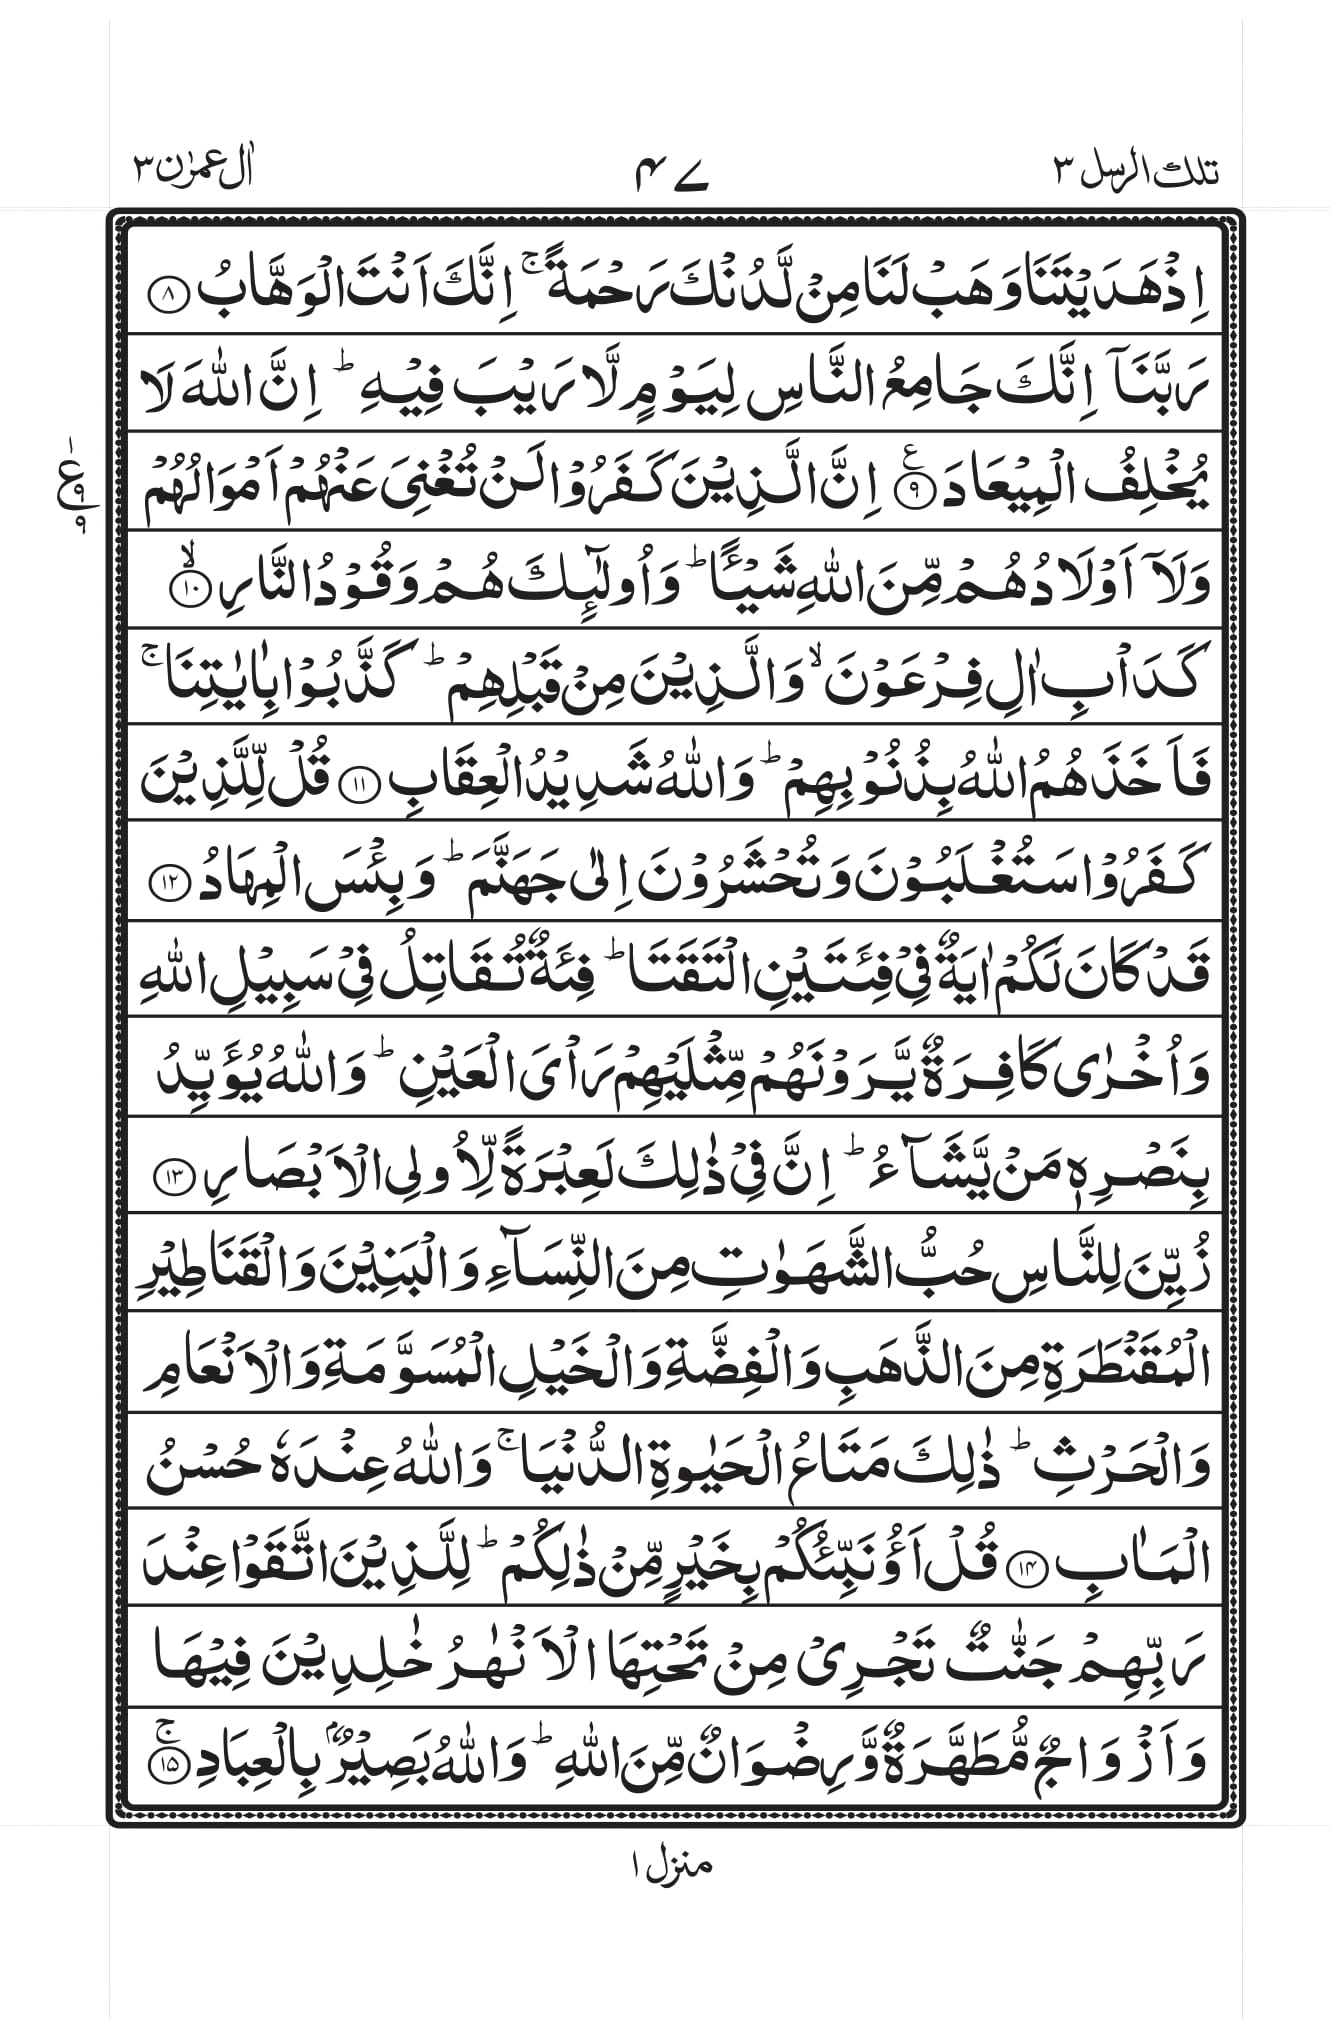 Surah-Al-Imran-pdf